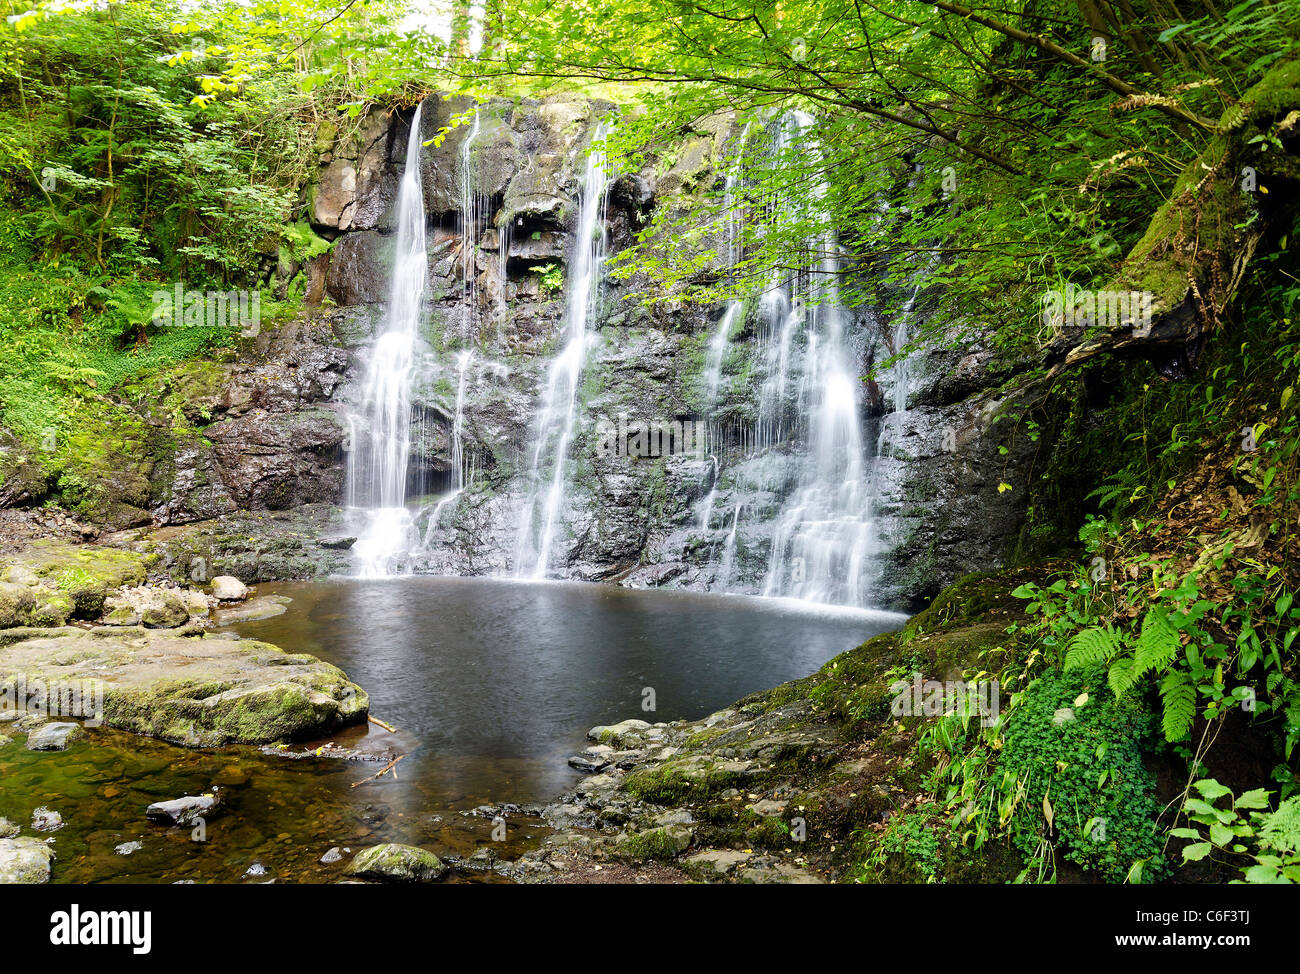 Eine der drei Glenariff Wasserfälle im Glenariff Forest Park, Glens von Antrim, Nordirland. Der Wasserfall Gehweg, eröffnete vor 80 Jahren. Stockfoto